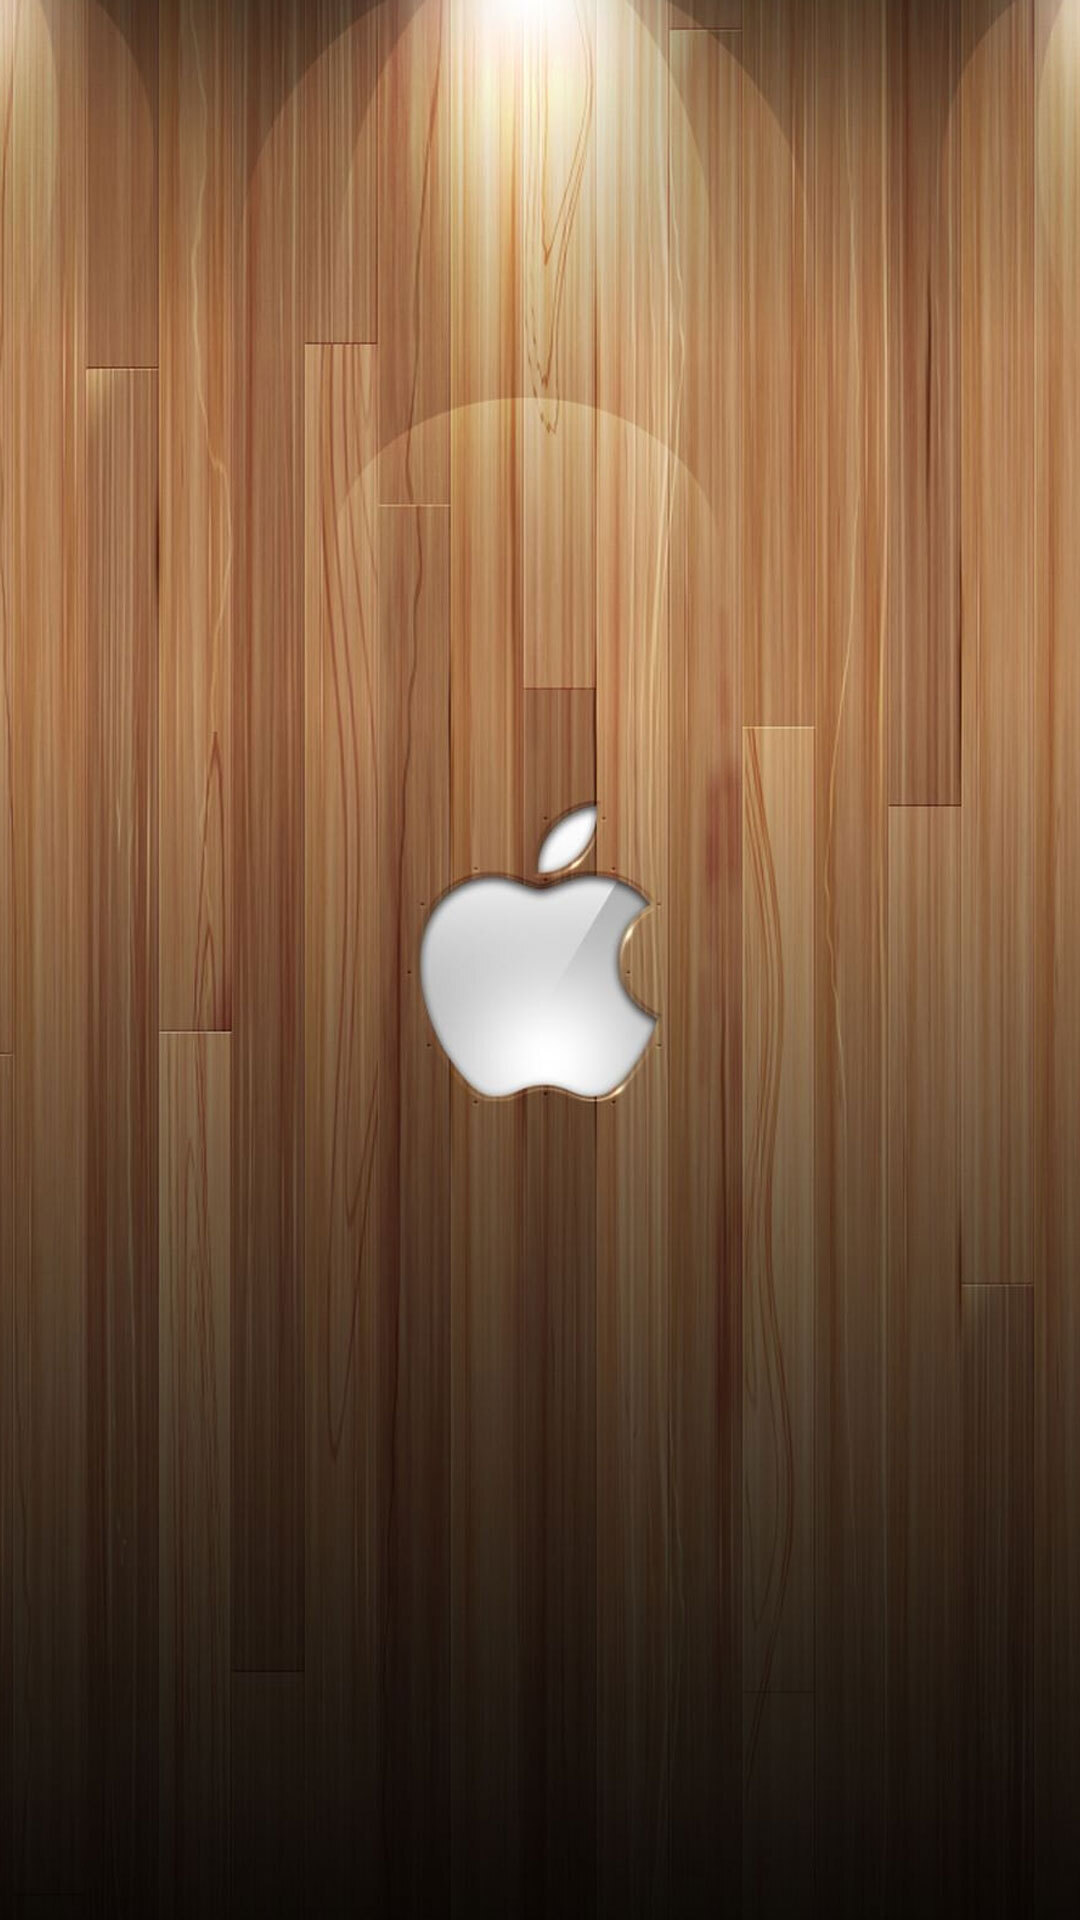 Mời tải về bộ ảnh nền logo quả táo nhiều màu cổ điển của Apple